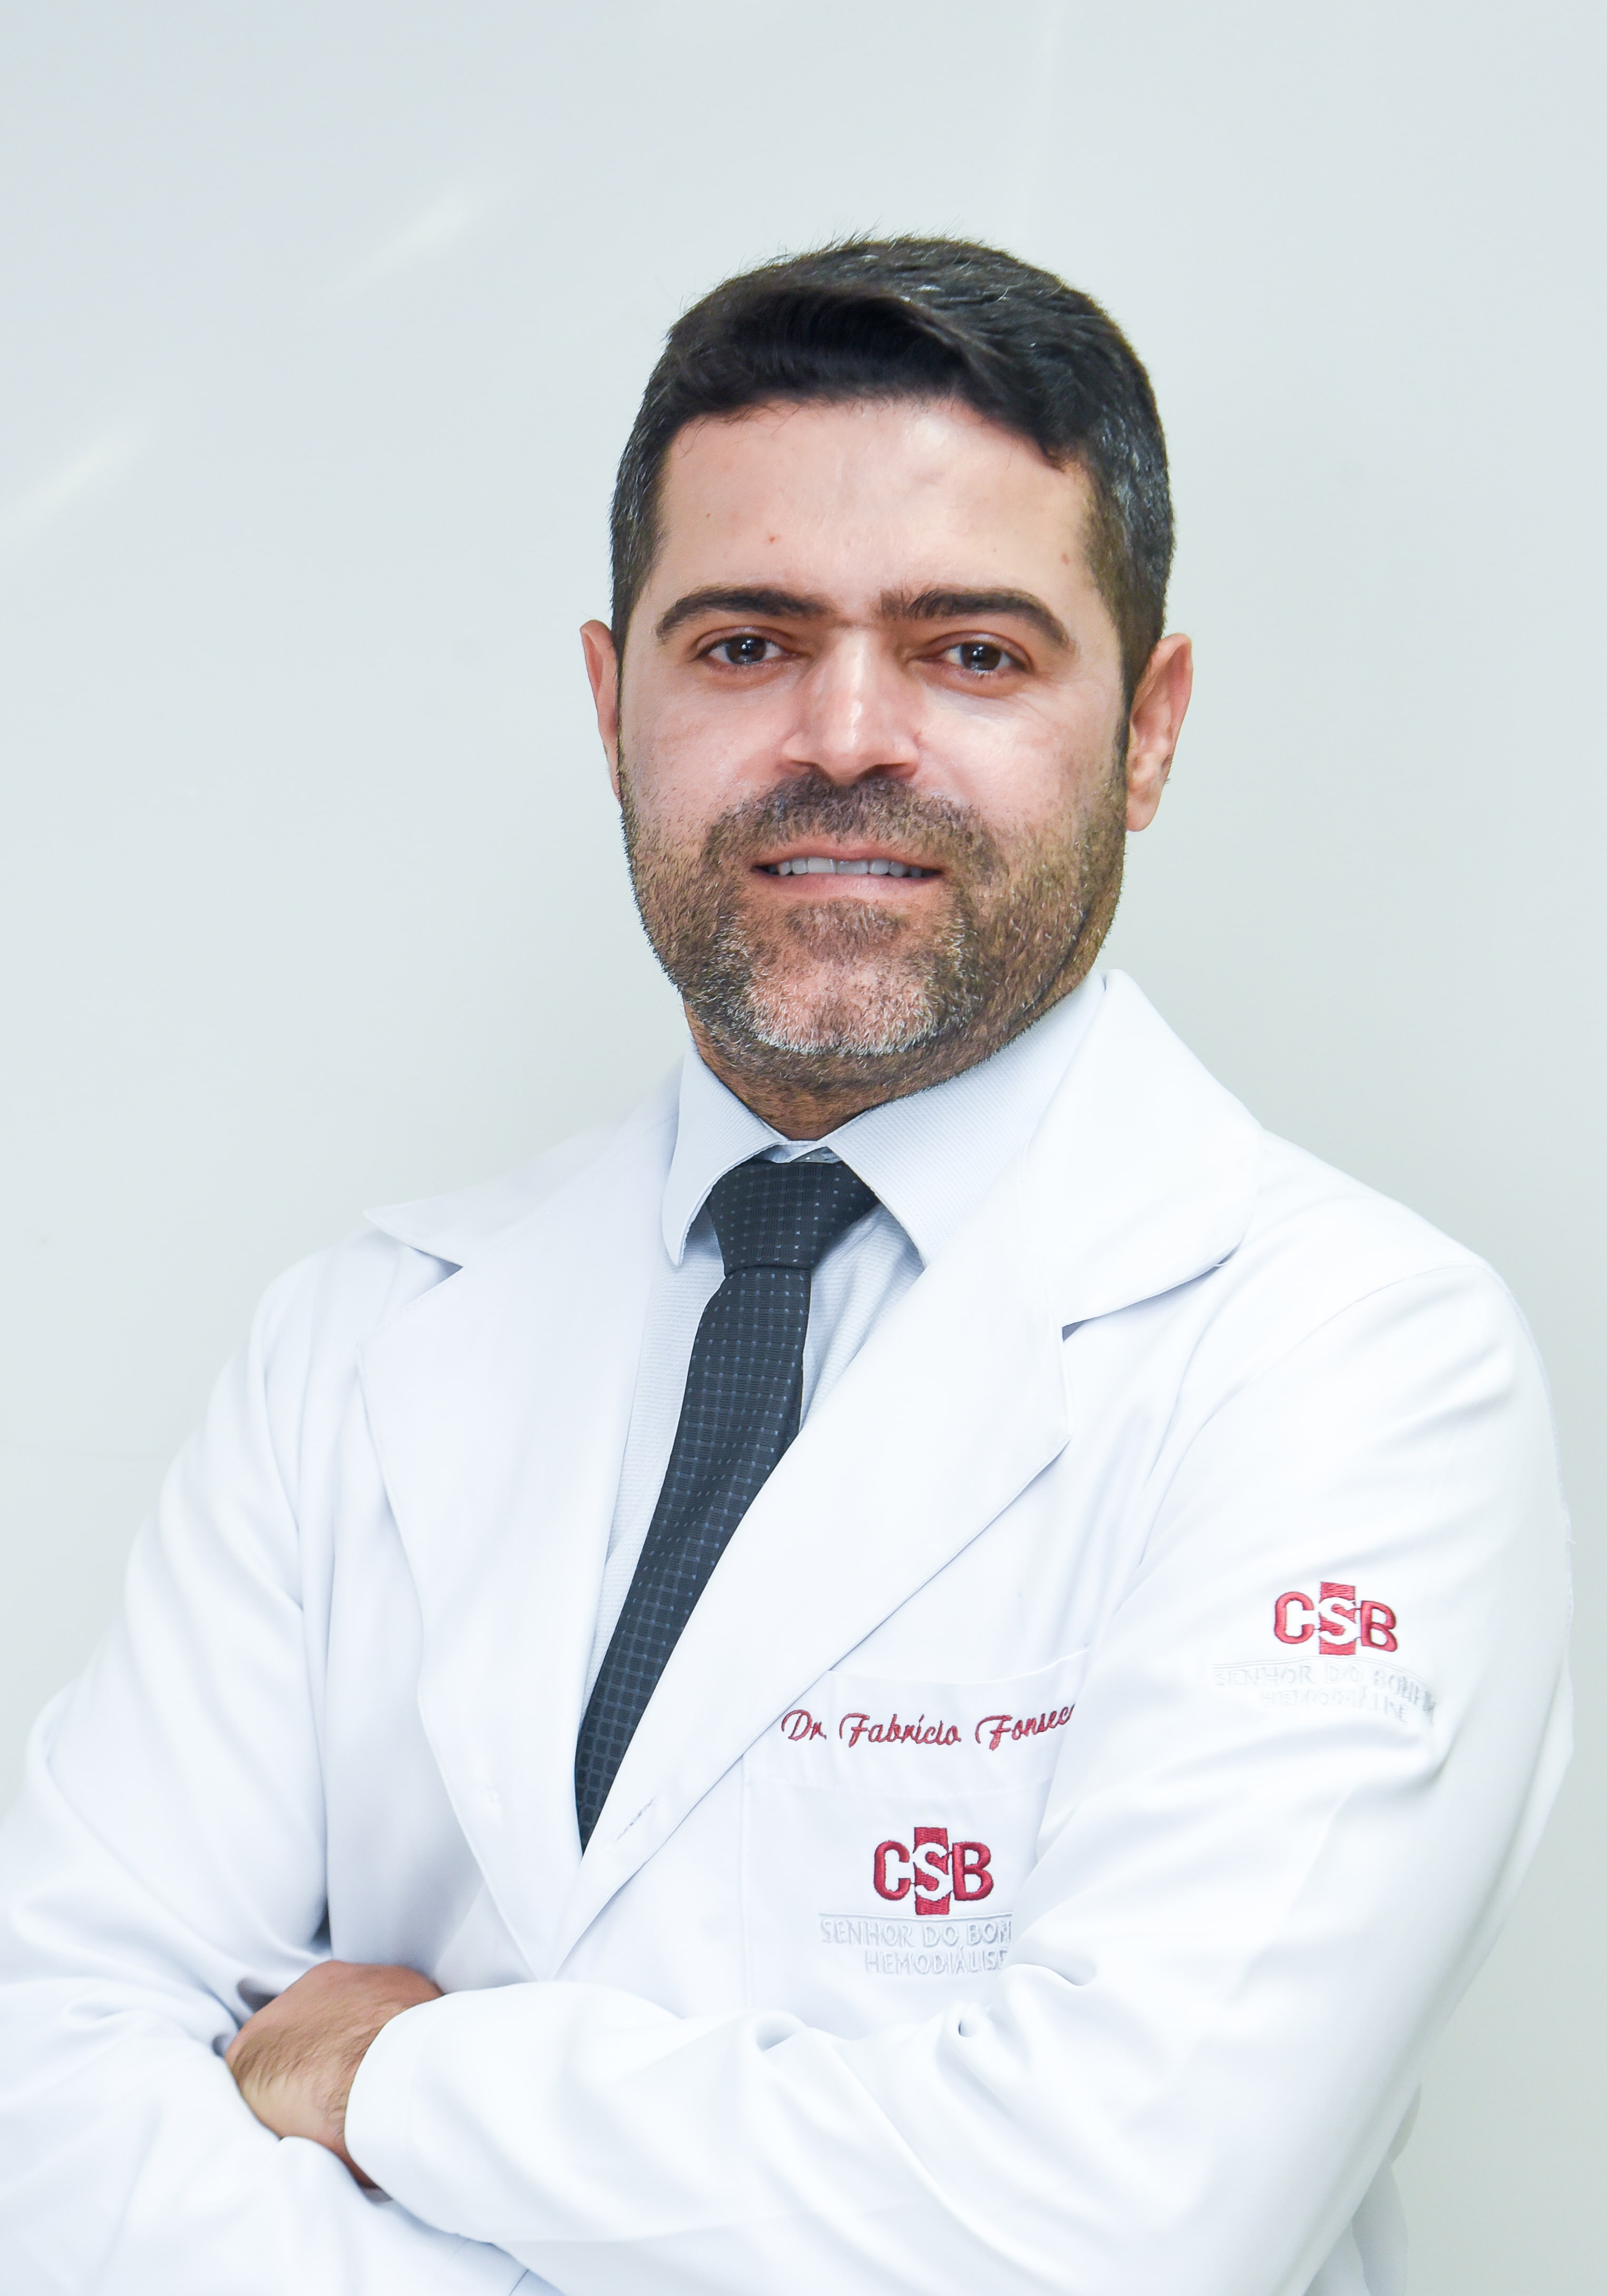 Dr. Fabrício Santos da Fonseca